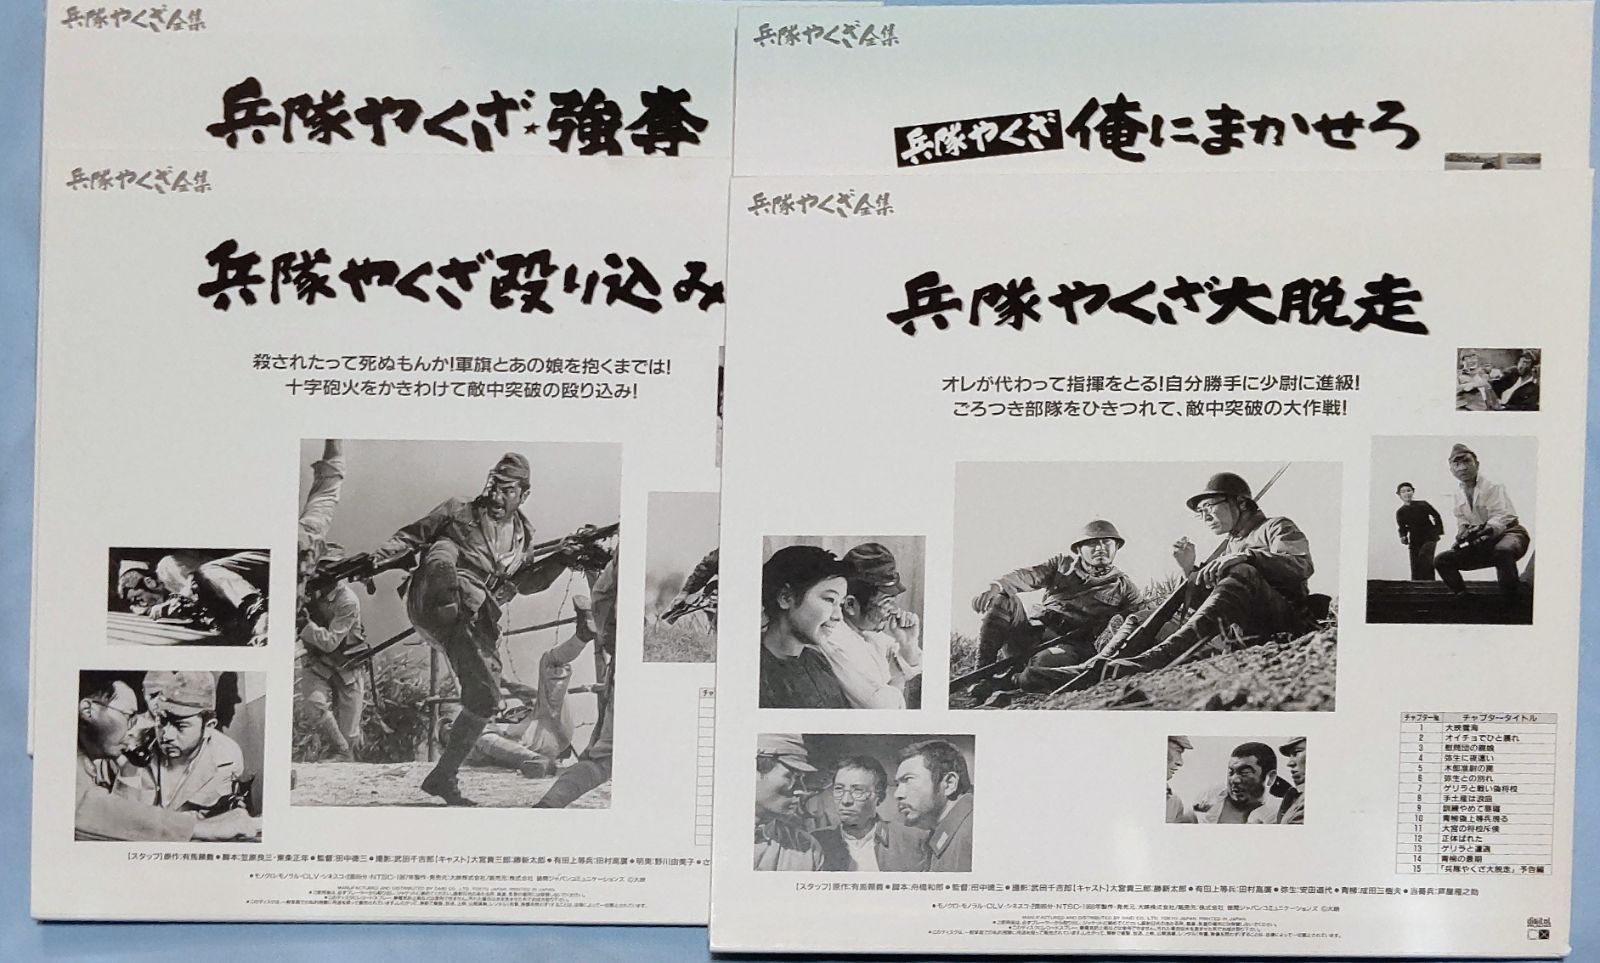 勝新太郎 「兵隊やくざ」 DVD全8巻BOX版フルセット - www.rnbi.lv